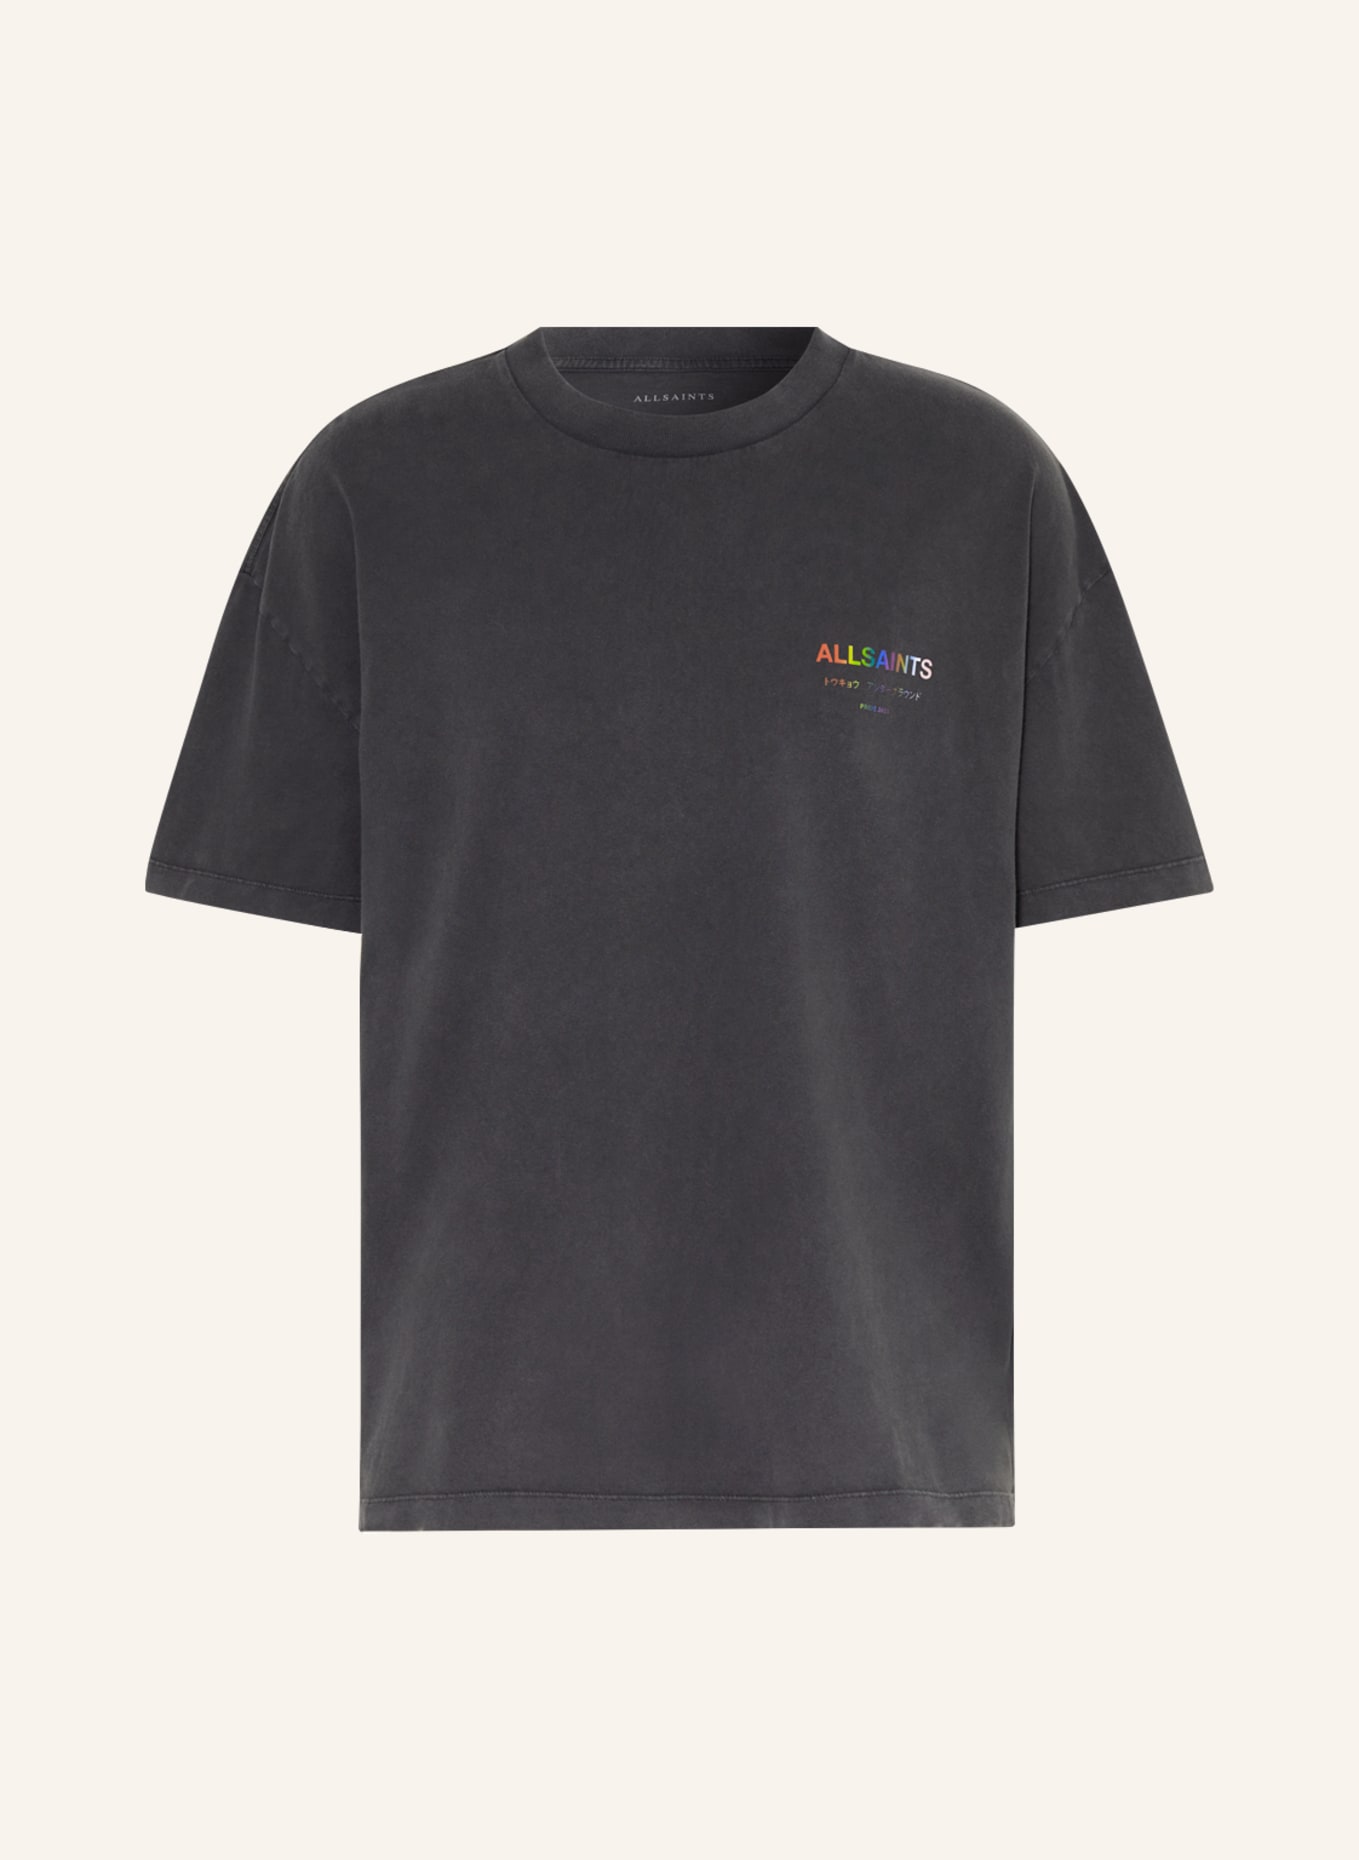 ALLSAINTS T-Shirt UNDERGROUND, Farbe: DUNKELGRAU (Bild 1)